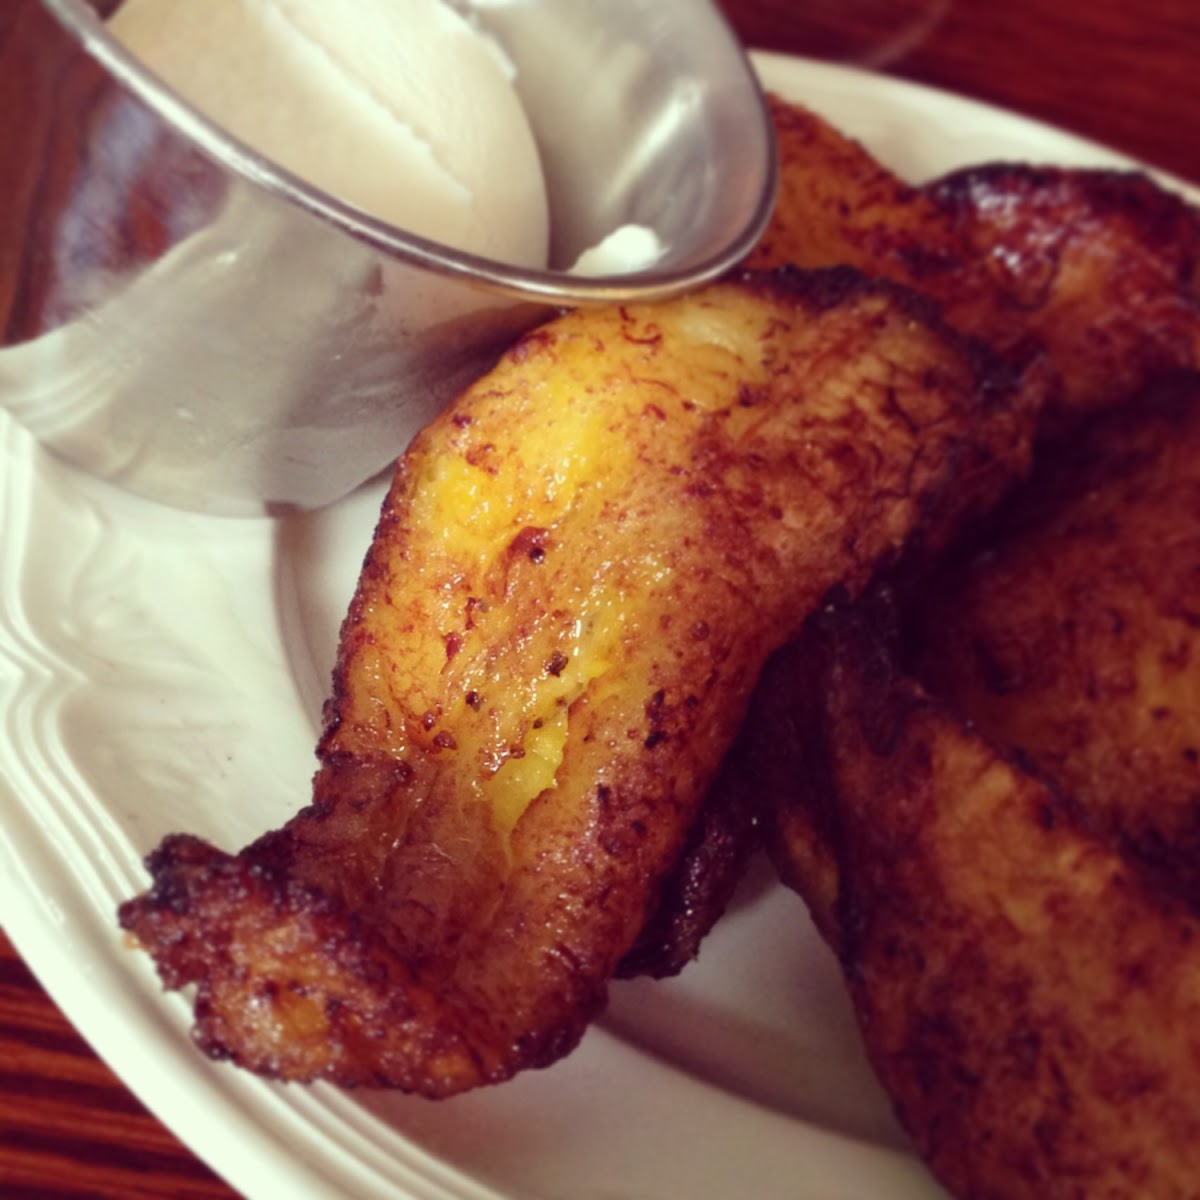 Fried plantains - safe fryer!